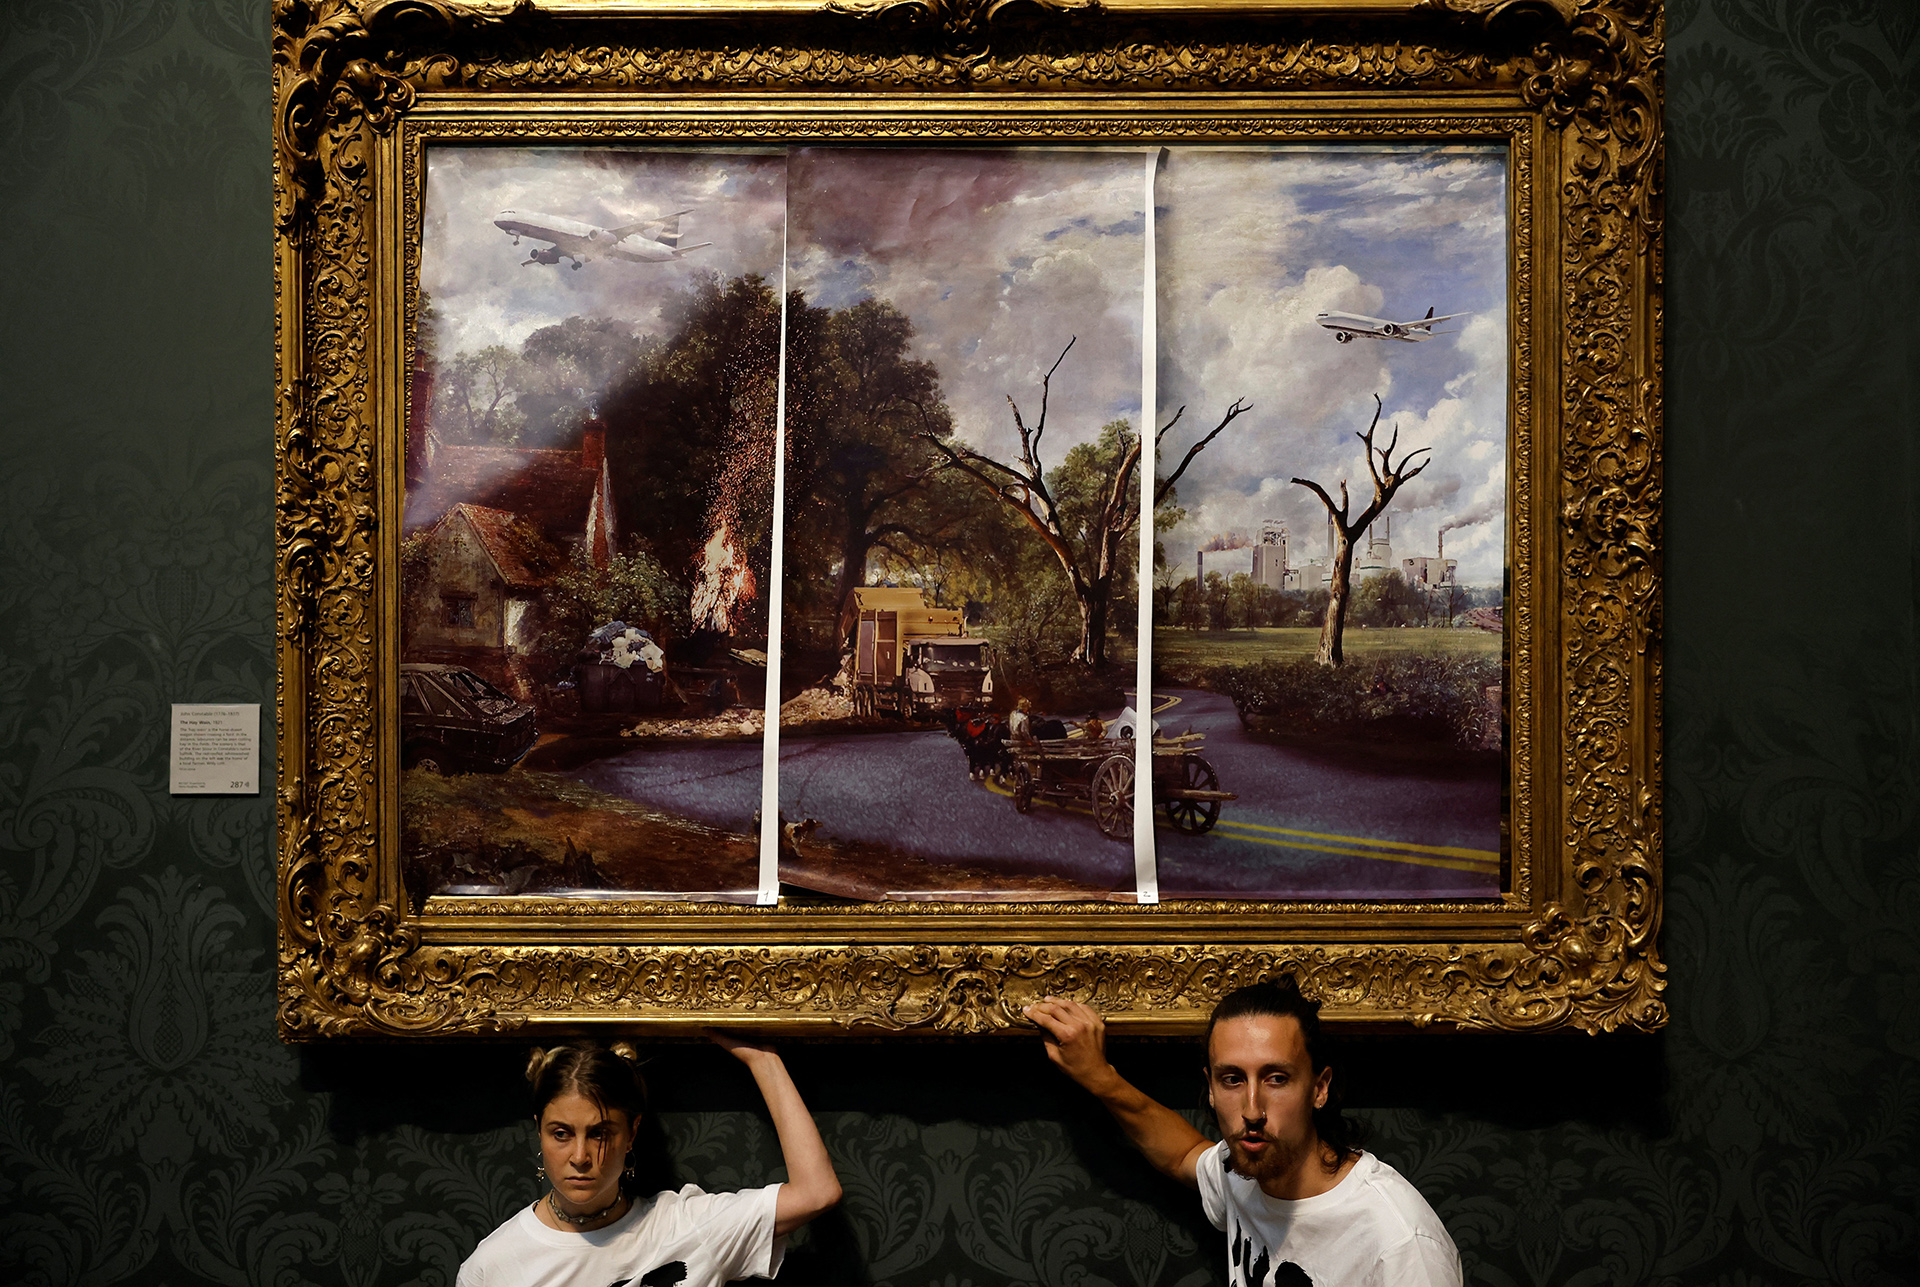 Activistas ambientales vandalizaron una obra maestra de John Constable en la Galería Nacional británica 